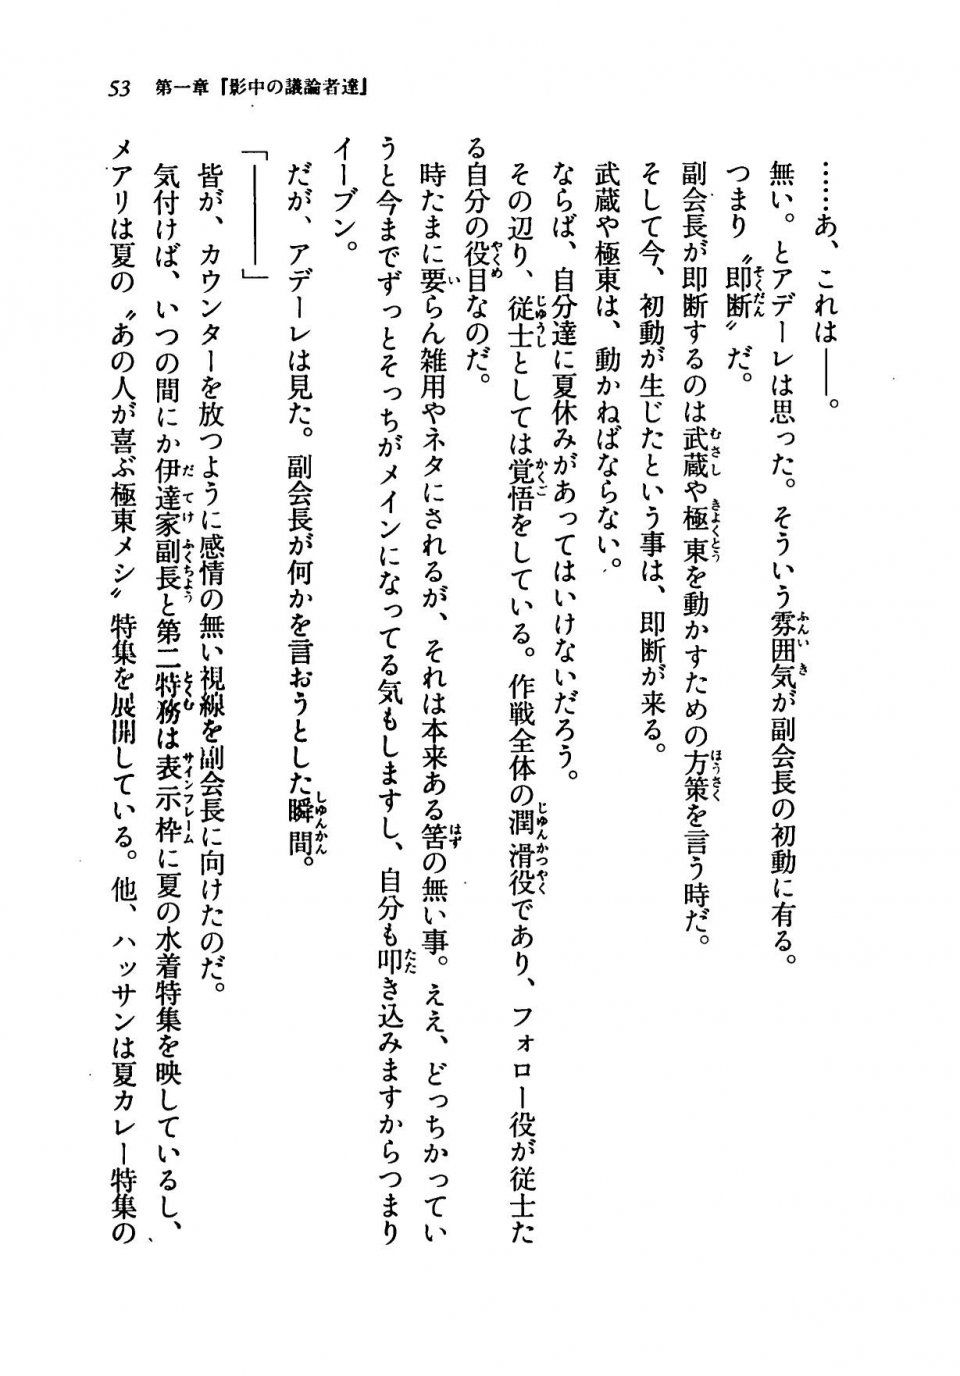 Kyoukai Senjou no Horizon LN Vol 19(8A) - Photo #53